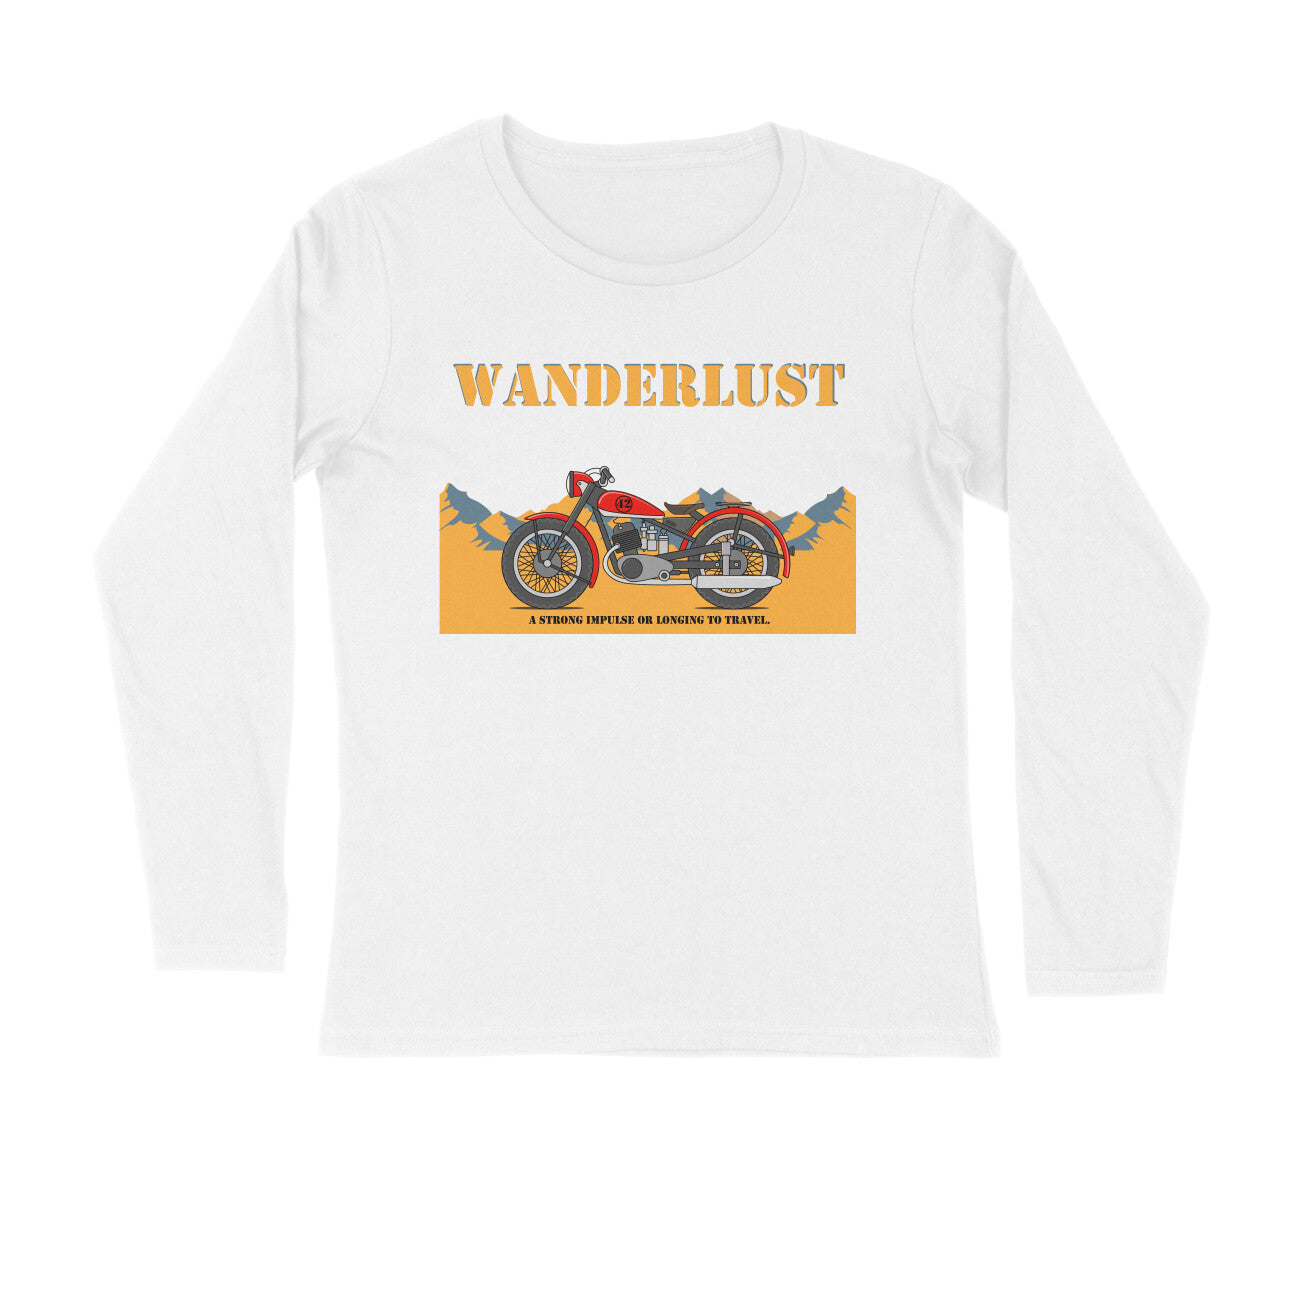 Men's Long Sleeve T-shirt - Wanderlust puraidoprints